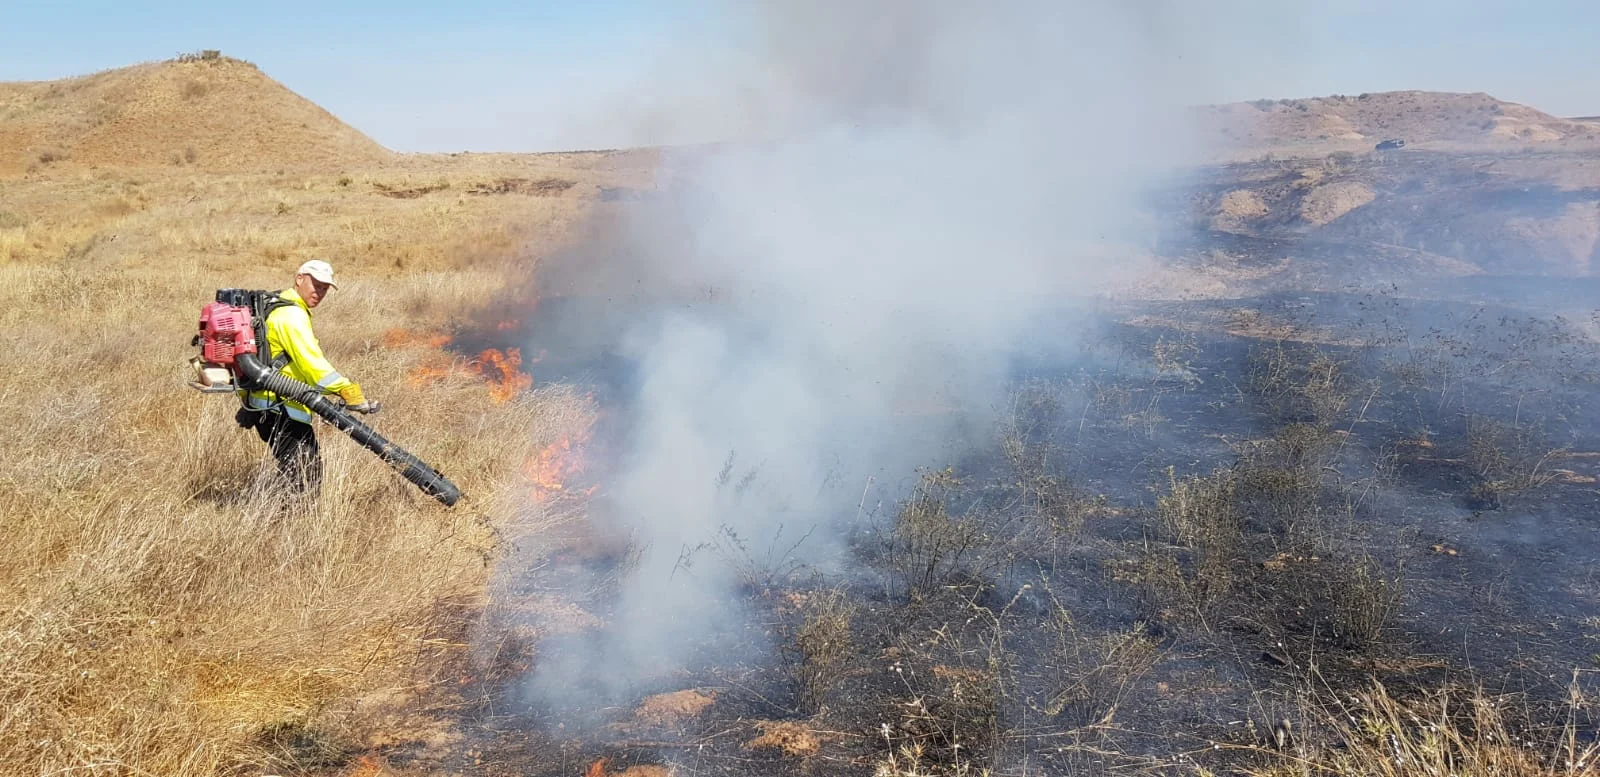 שריפה בשמורת הטבע בארי שבעוטף עזה כתוצאה מבלון תבערה